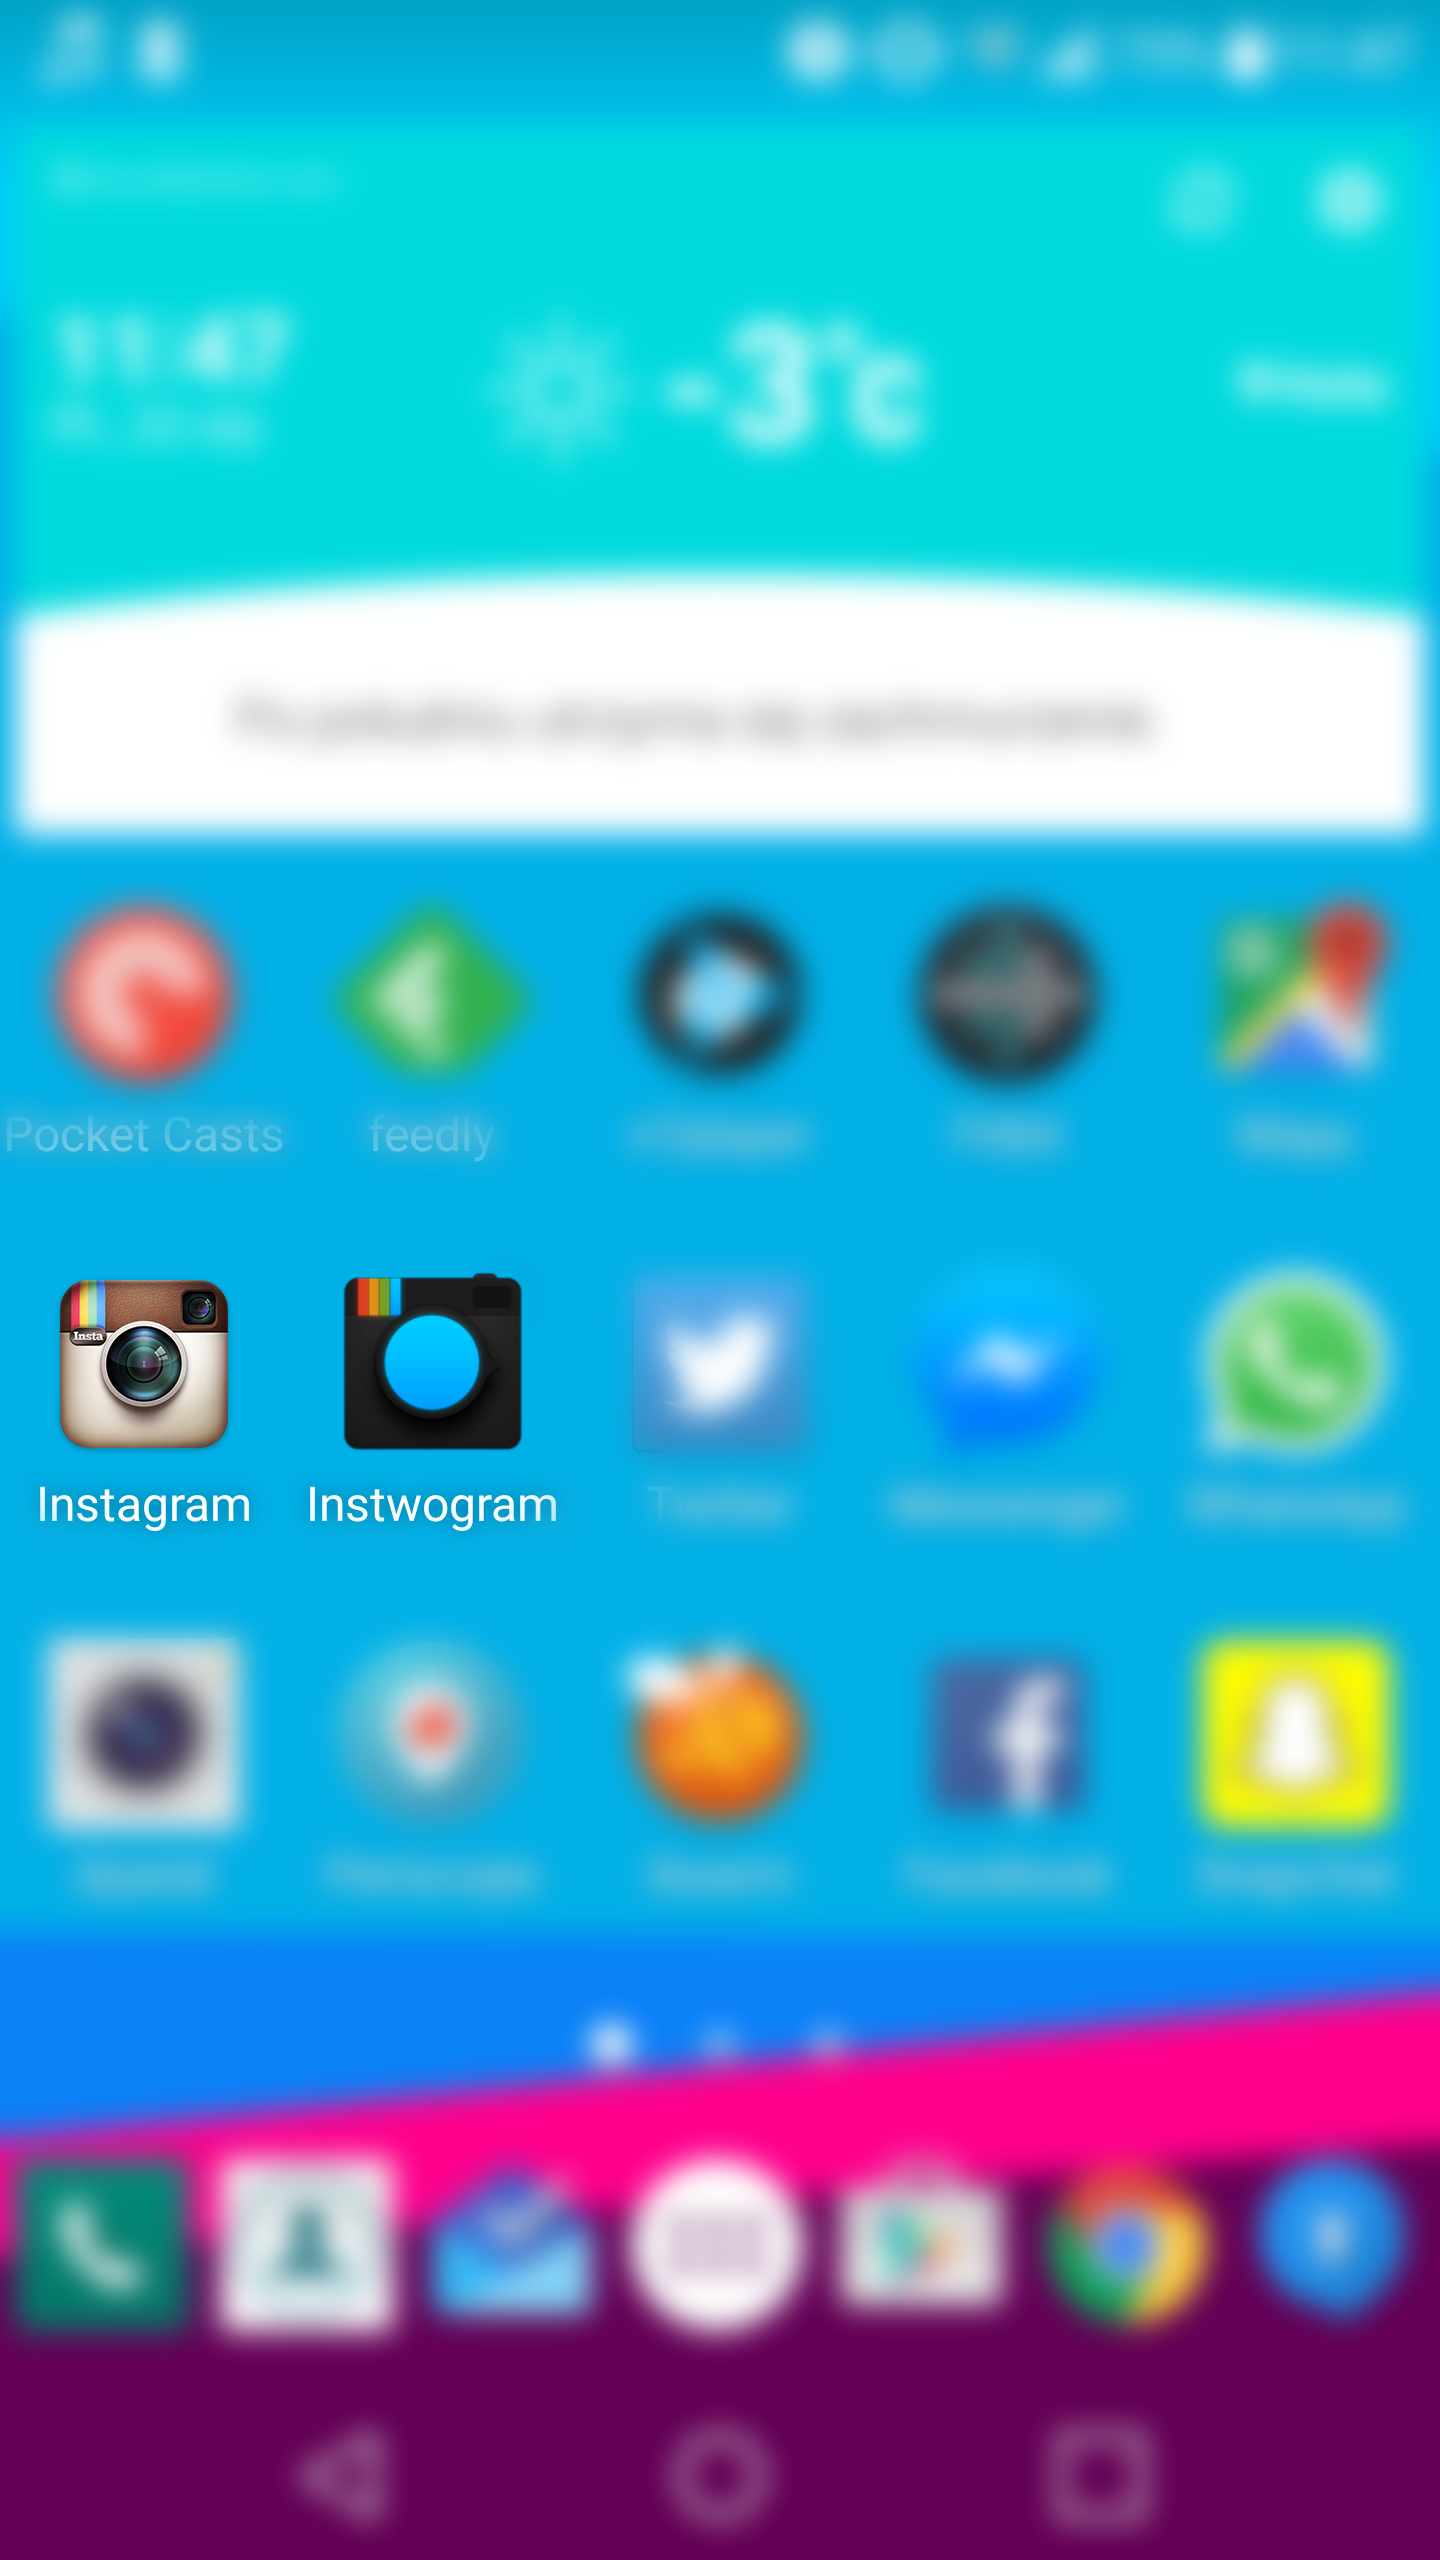 Instwogram i Instagram - Jak używać dwóch kont